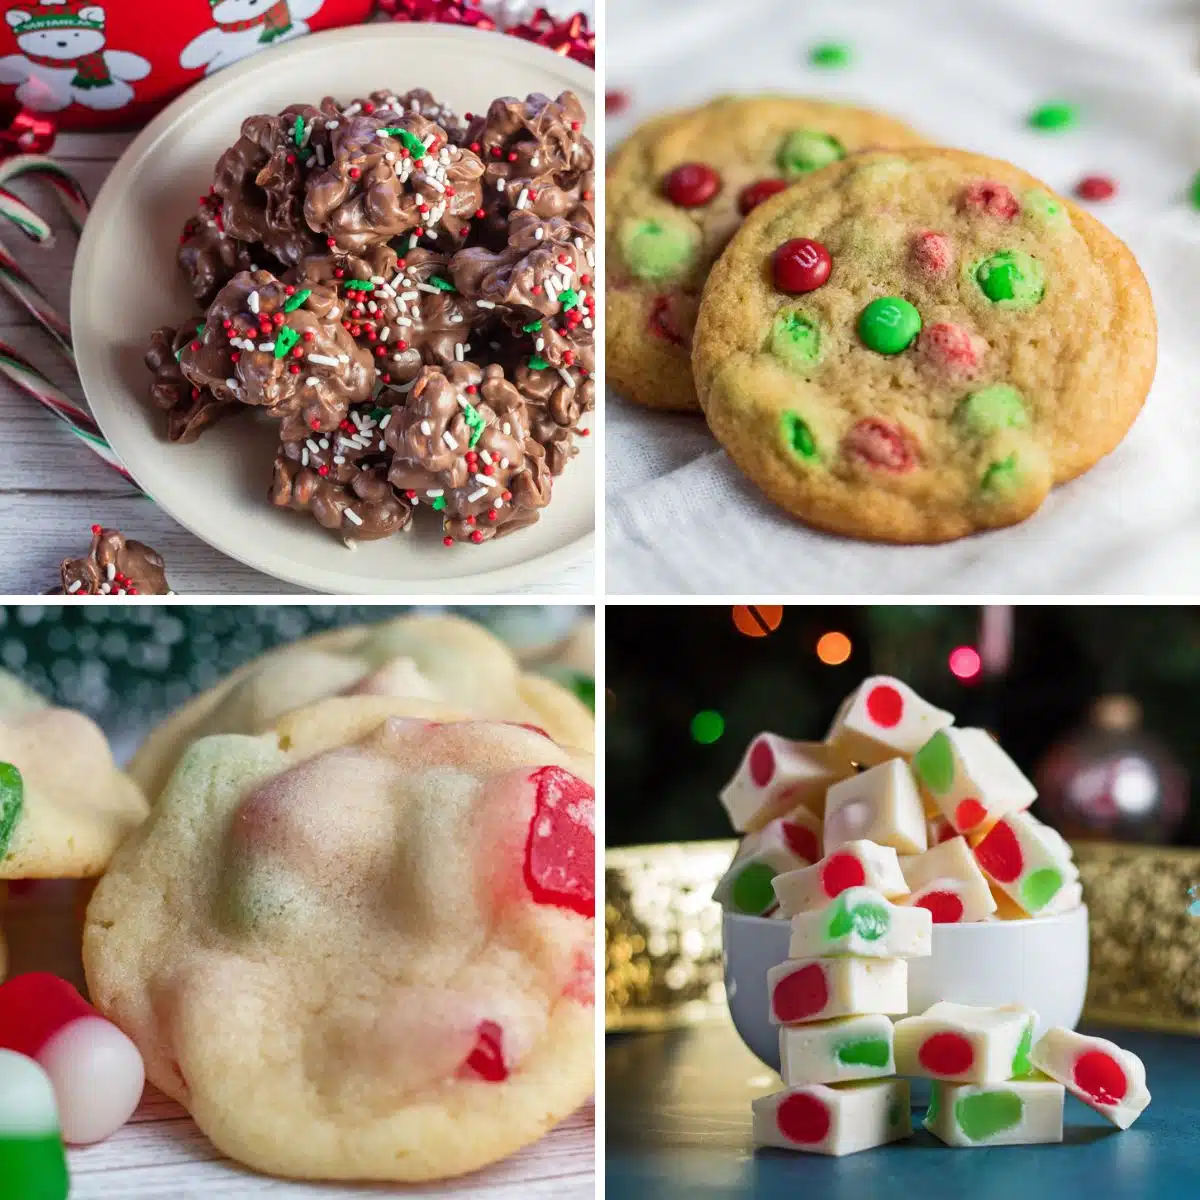 Kuki dan gula-gula pencuci mulut Krismas yang mudah dibuat untuk sambutan percutian yang lazat dan manis menampilkan empat kegemaran keluarga dalam kolaj persegi.